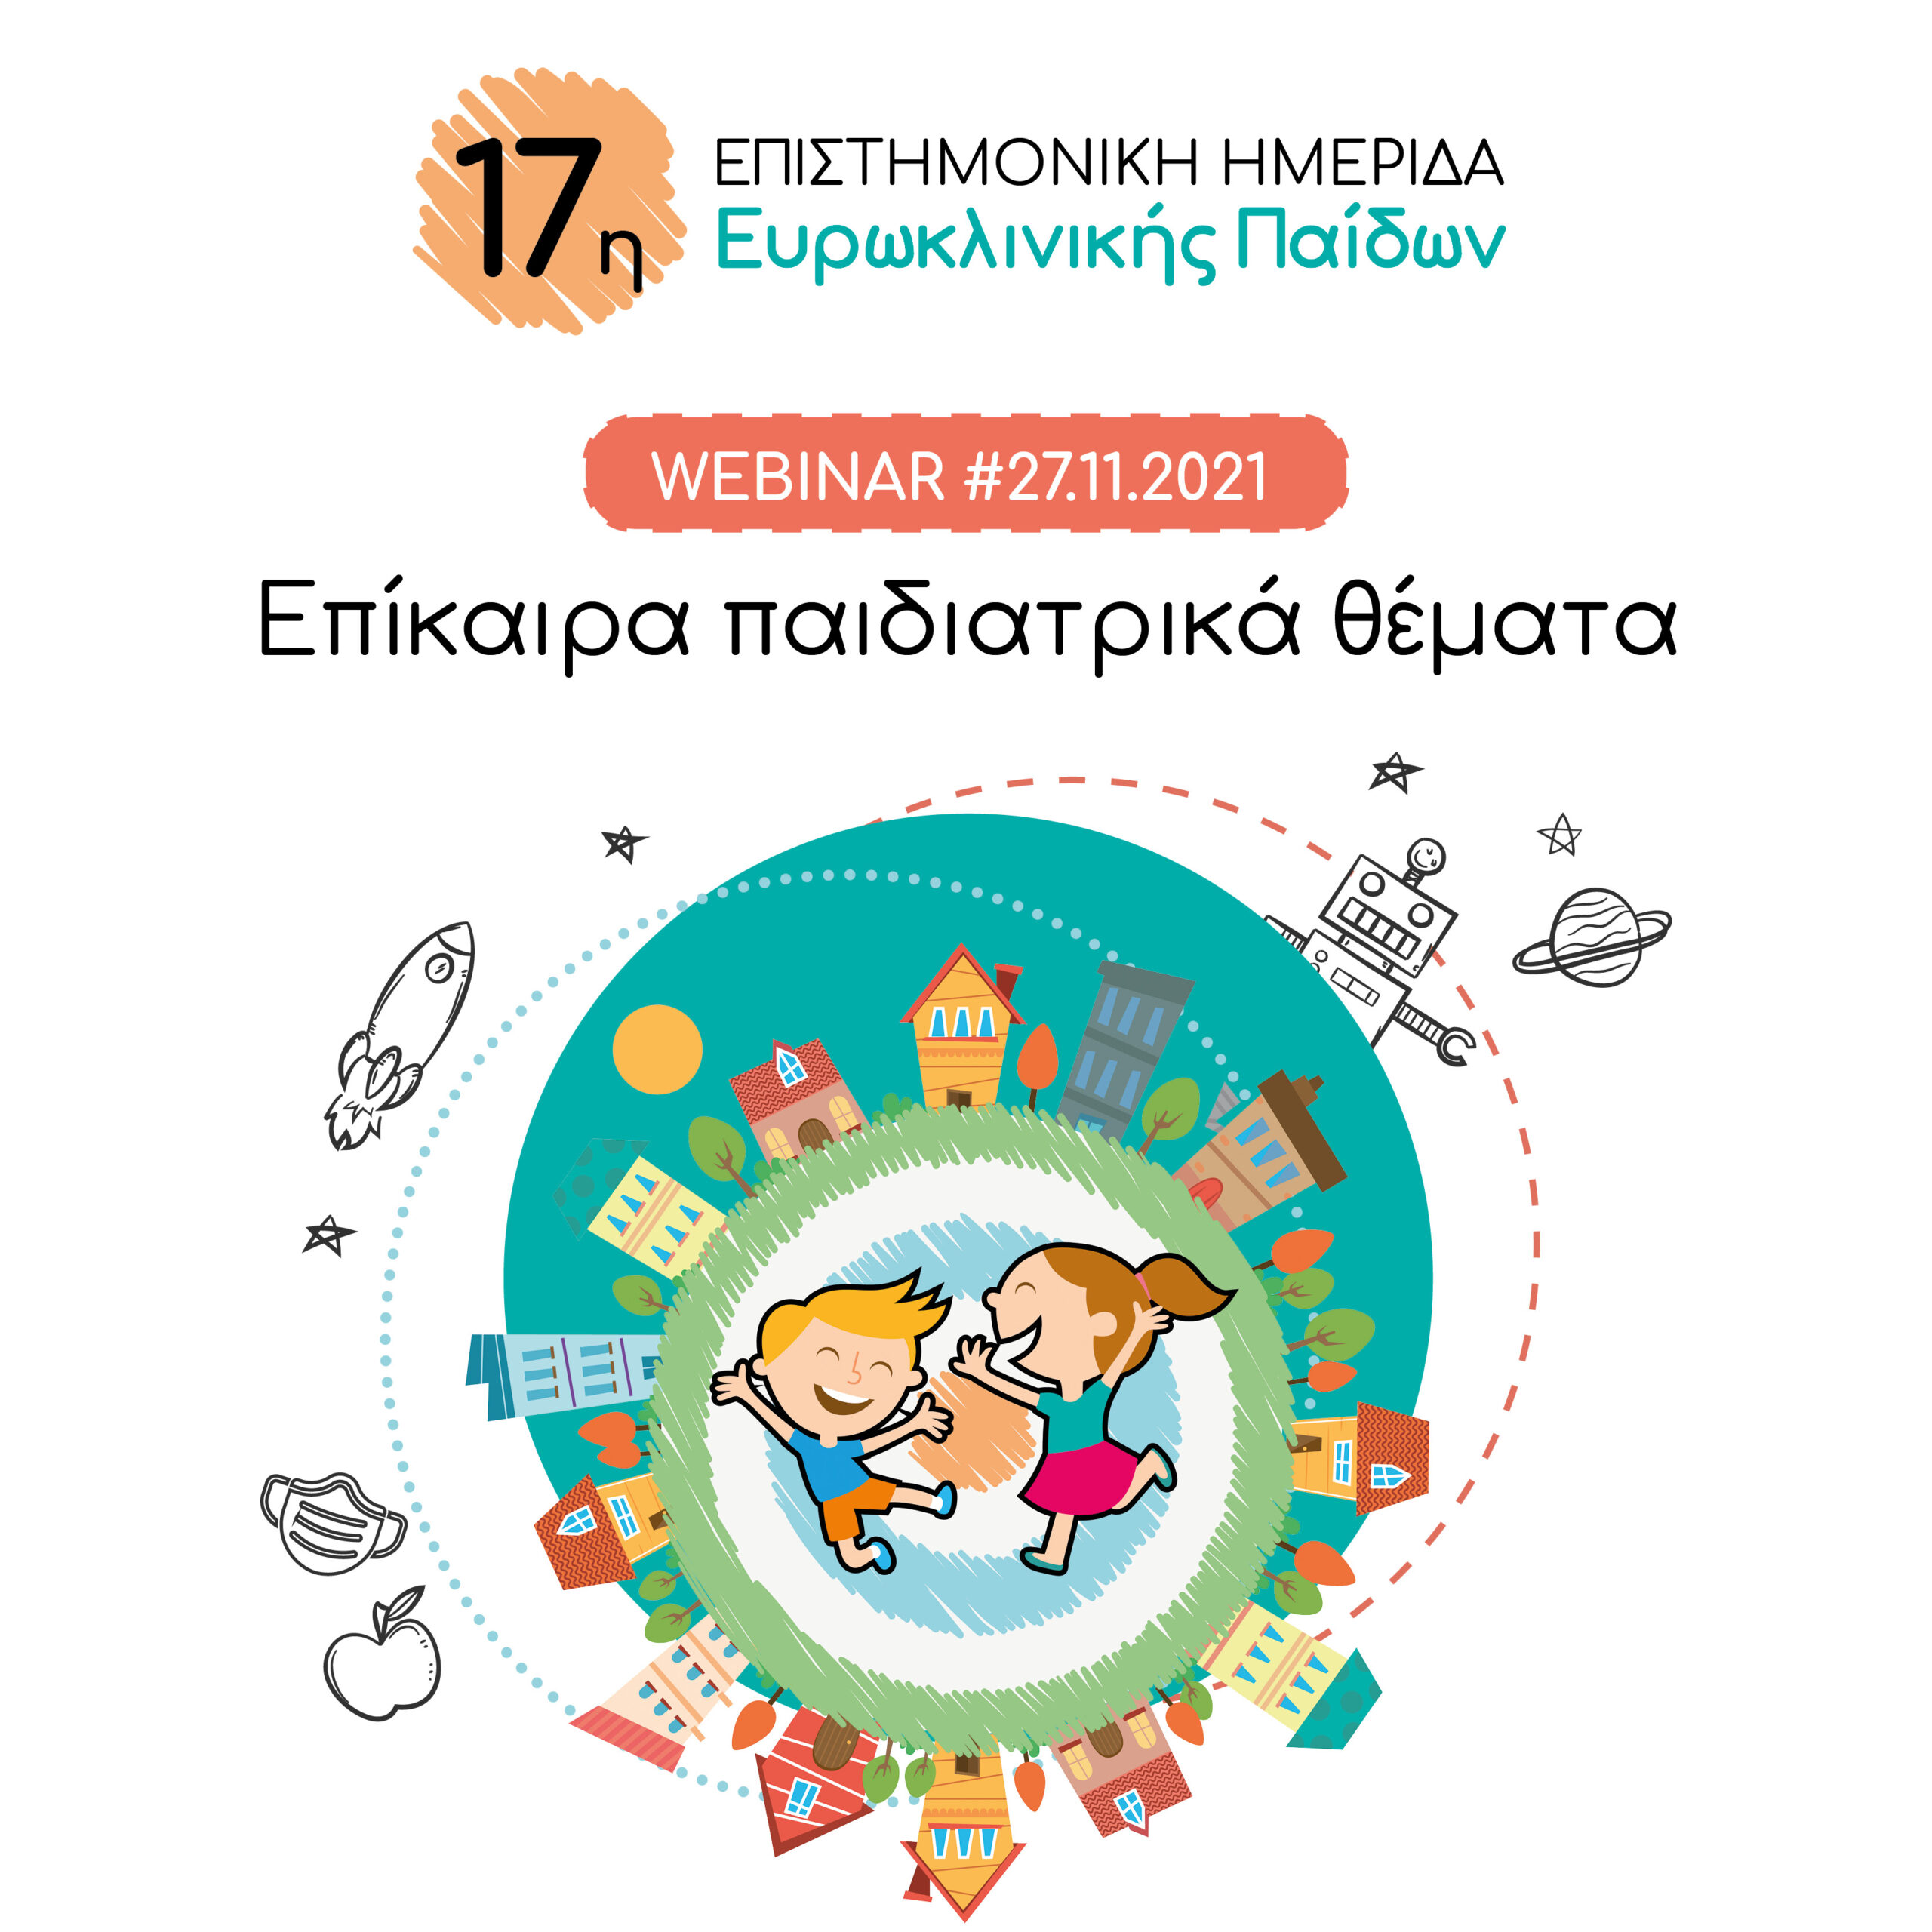 17η Επιστημονική Ημερίδα (Live Webinar) Ευρωκλινικής Παίδων: Επίκαιρα παιδιατρικά θέματα, 27/11/2021